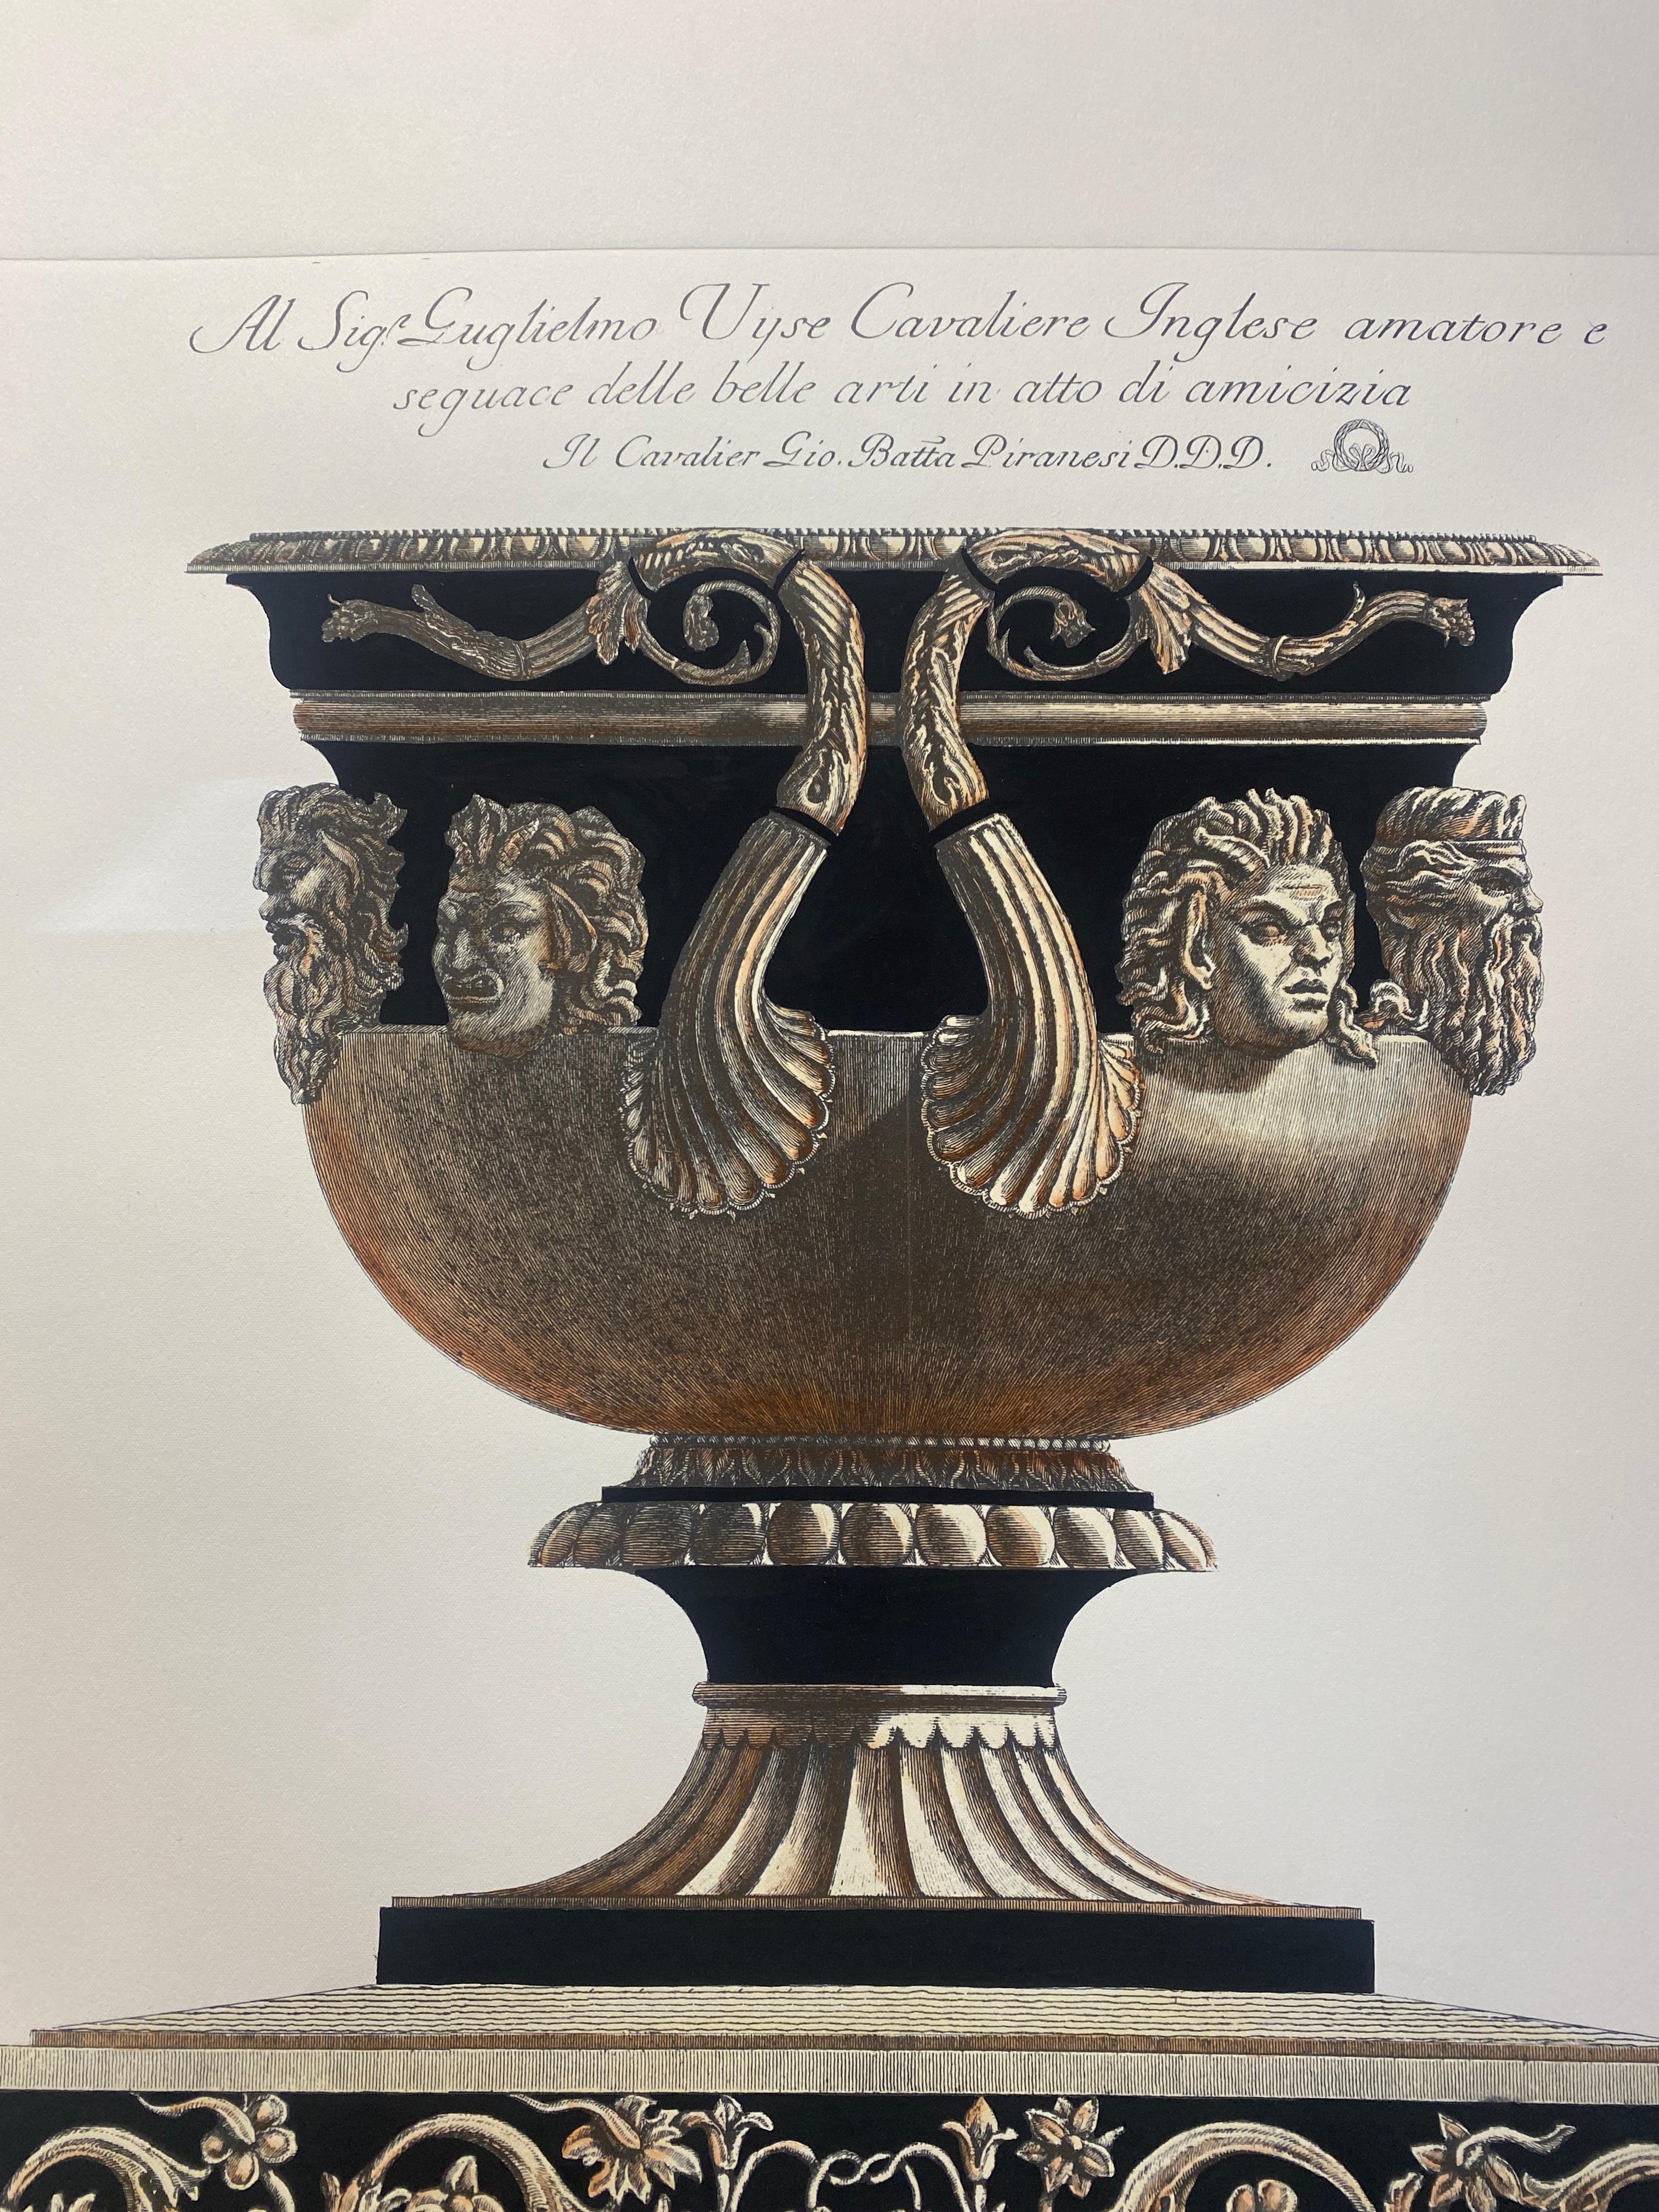 Extra große Vase aus römischem Marmor auf einem Sockel aus Porphyr, gedruckt mit einer Handpresse auf Gravurpapier aus 100% Baumwolle.
Vollständig handbemalt mit cremefarbener Farbe, umberfarbenen Highlights und mattschwarzen Details.
Hellbraune